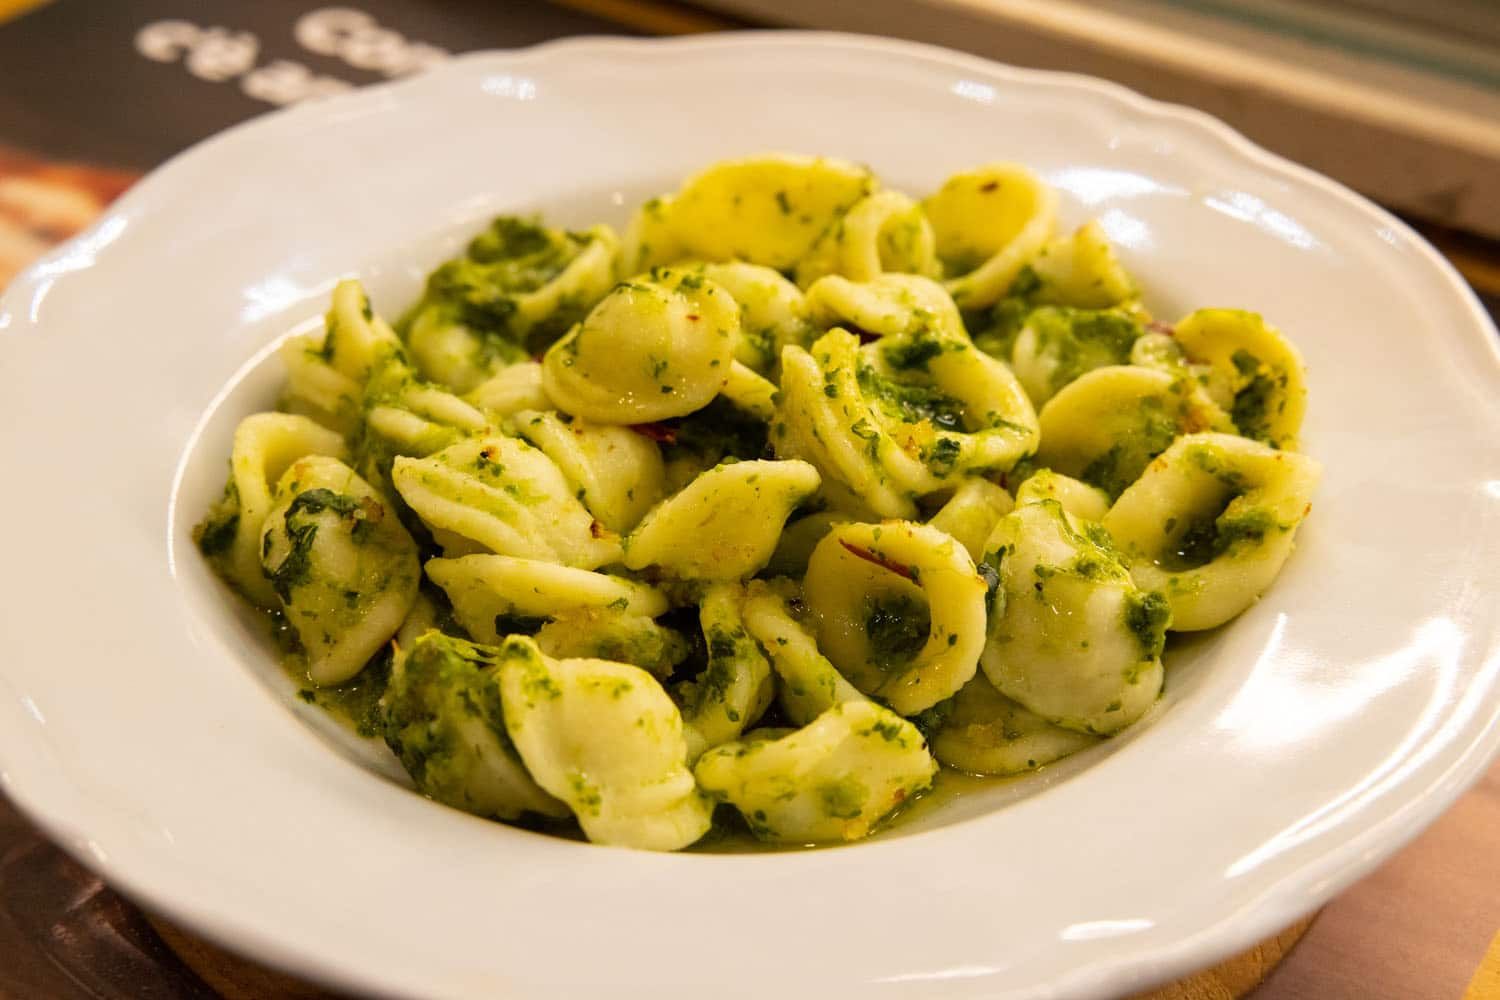 Orecchiete | Where to eat in Matera